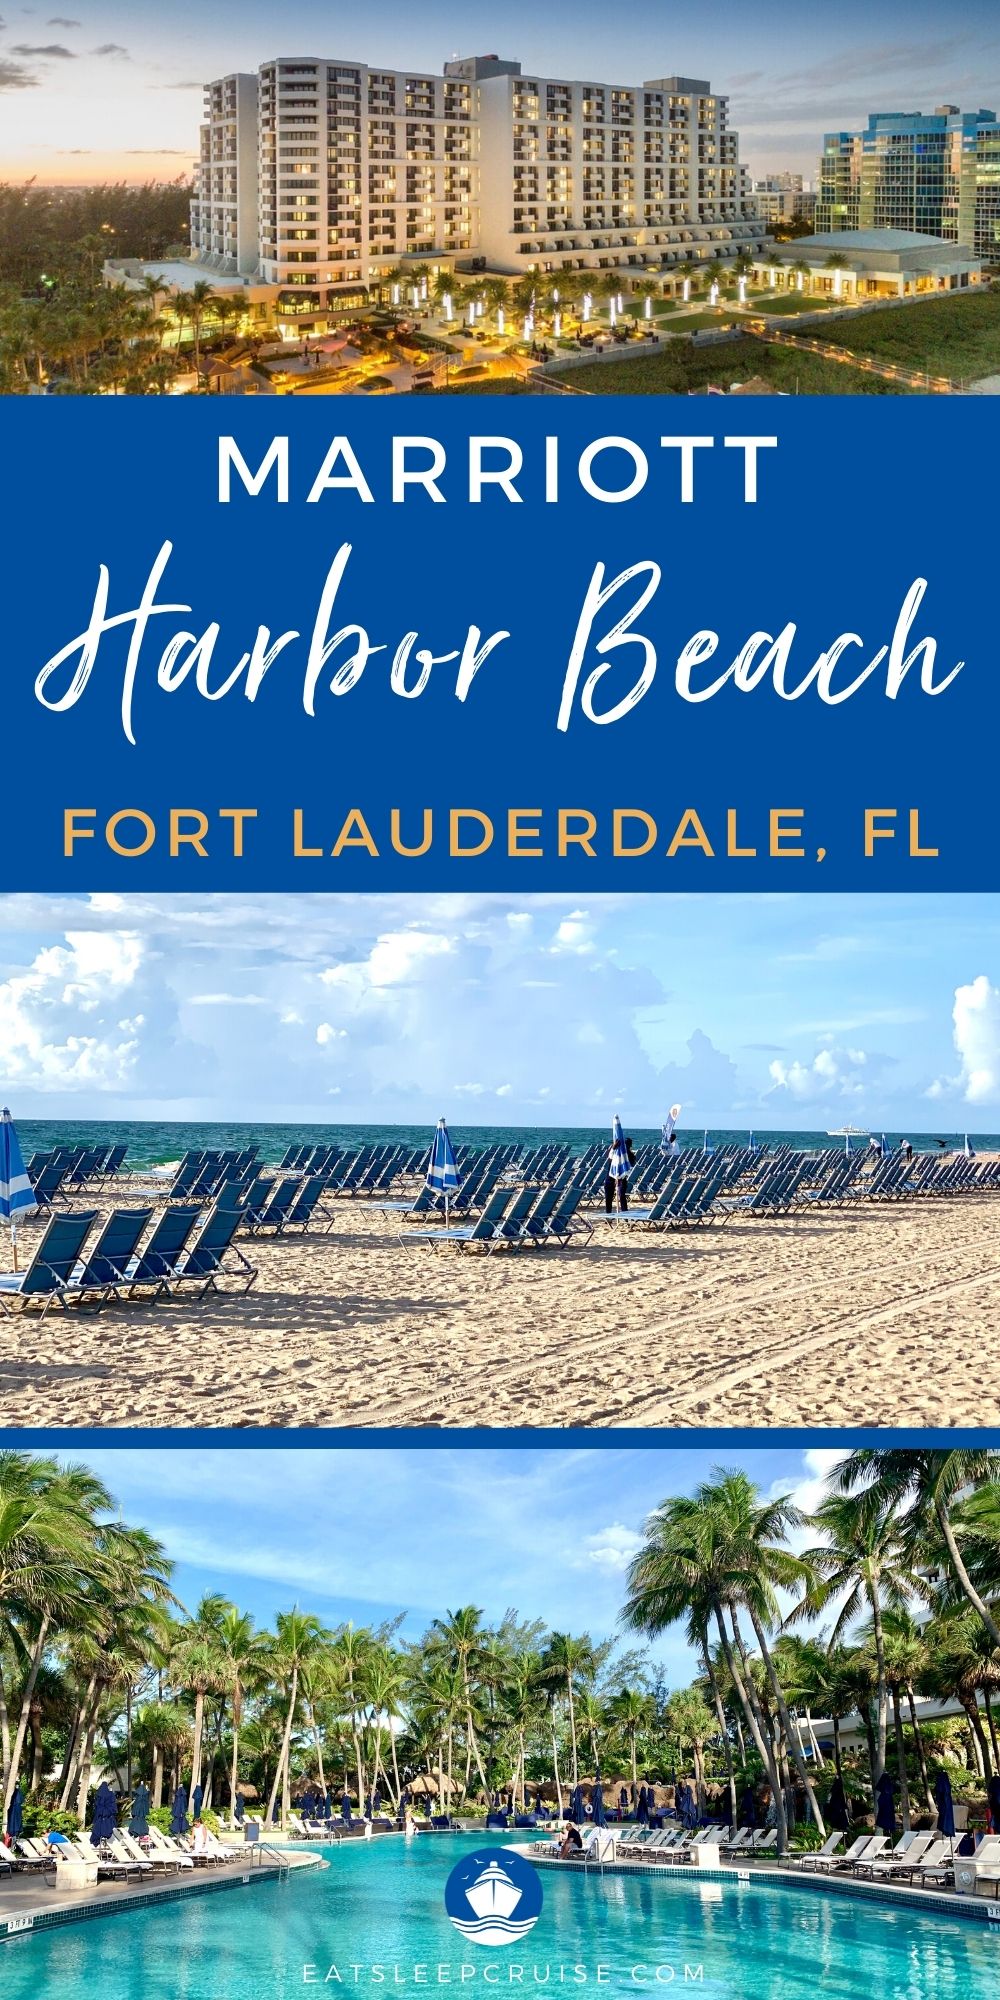 Marriott Harbor Beach Resort Hotel Review